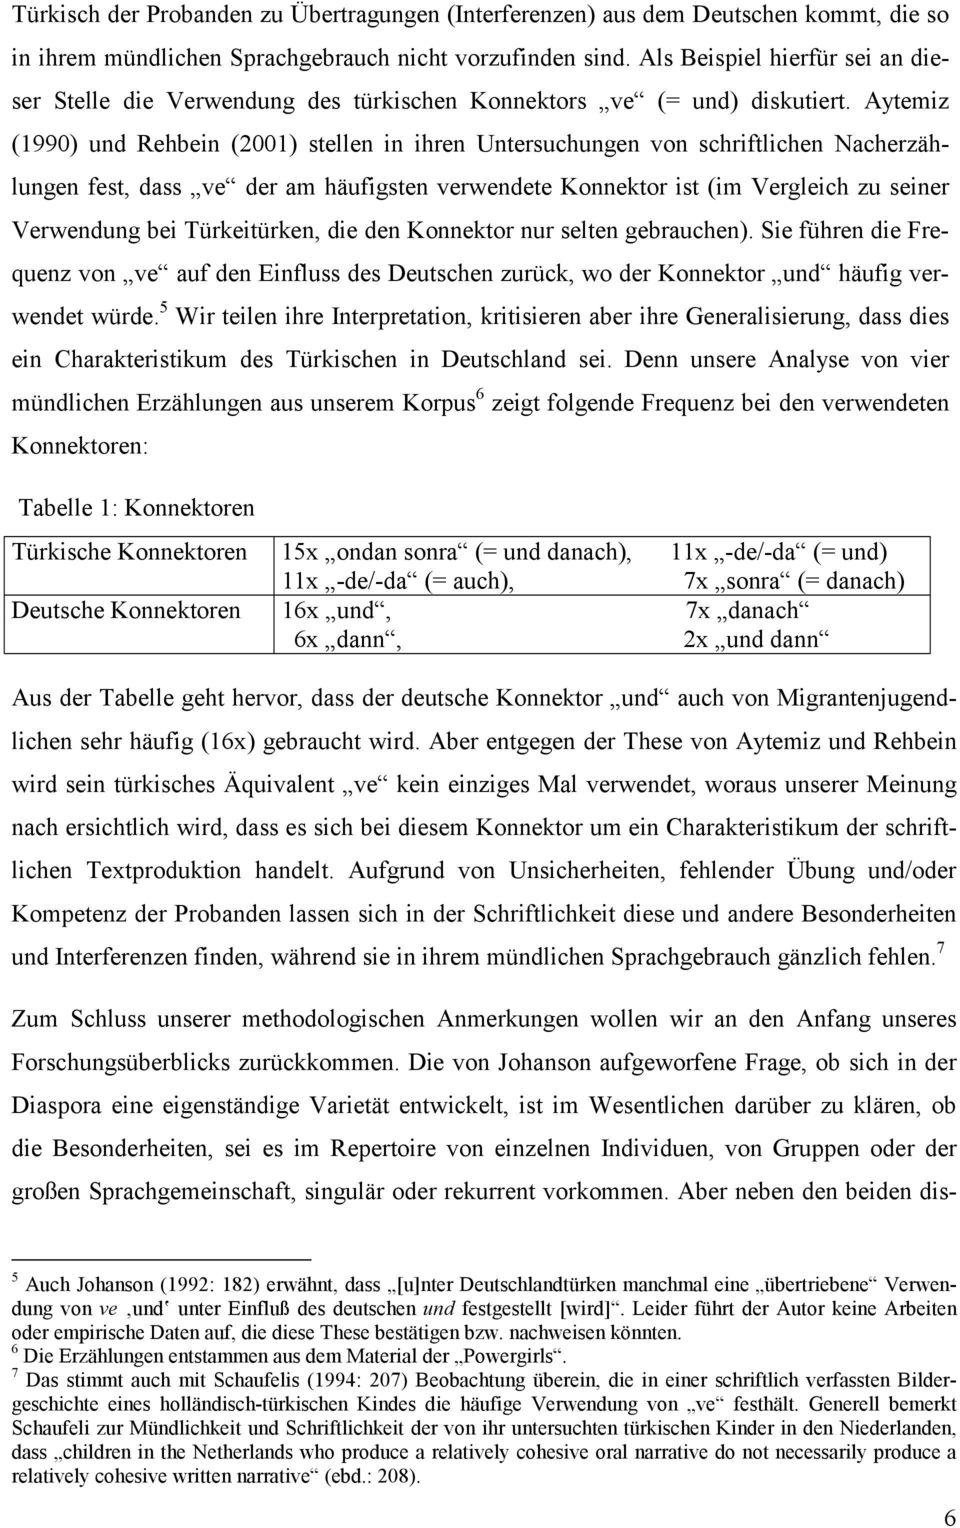 Aytemiz (1990) und Rehbein (2001) stellen in ihren Untersuchungen von schriftlichen Nacherzählungen fest, dass ve der am häufigsten verwendete Konnektor ist (im Vergleich zu seiner Verwendung bei